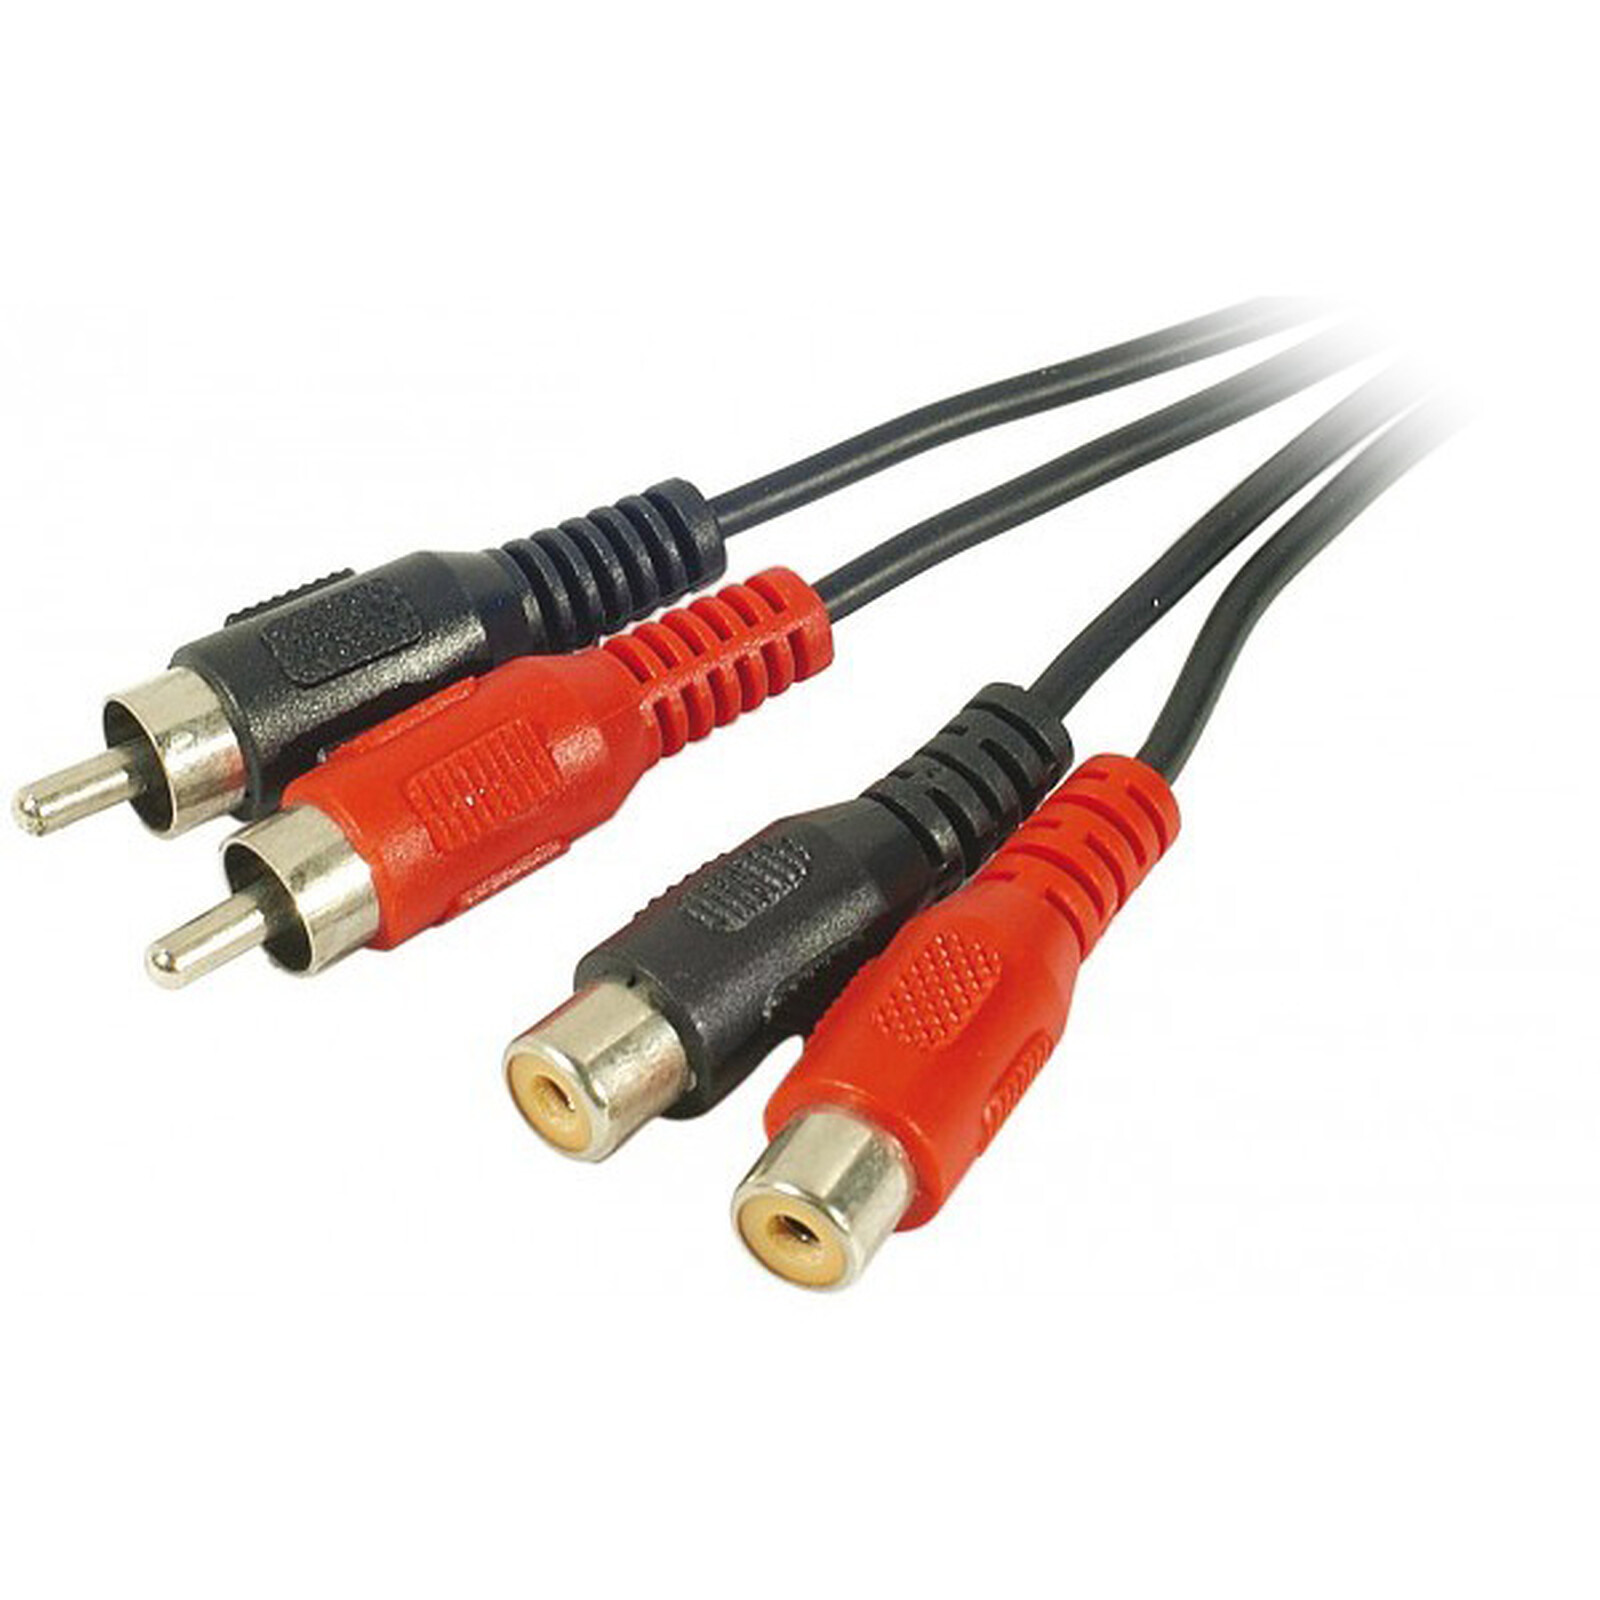 Rallonge de câble RCA de ferroutage 2Cordon adaptateur d'extension audio  RCA sur le fil le raccord mâle à femelle double rouge/blanc fiche jack mâle  du connecteur d'étendre Vidéo Audio 2 canaux stéréo 